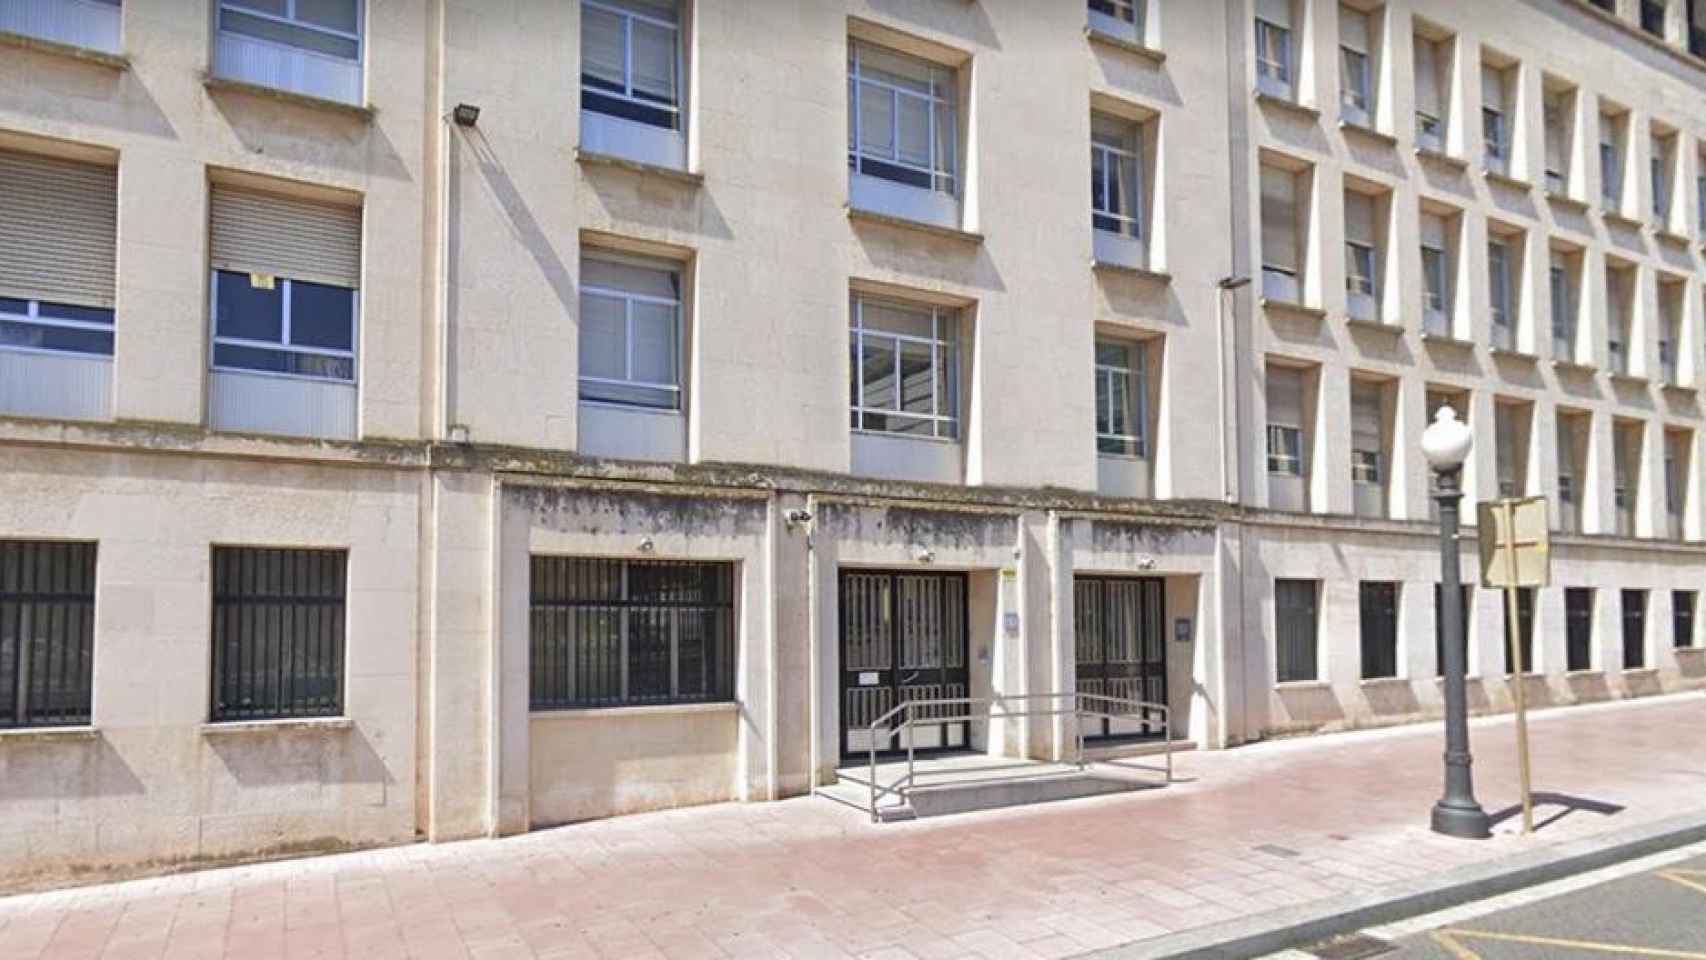 Audiencia Provincial de Tarragona, donde el jurado popular ha declarado culpables a dos mujeres acusadas de la muerte de un recién nacido / MAPS